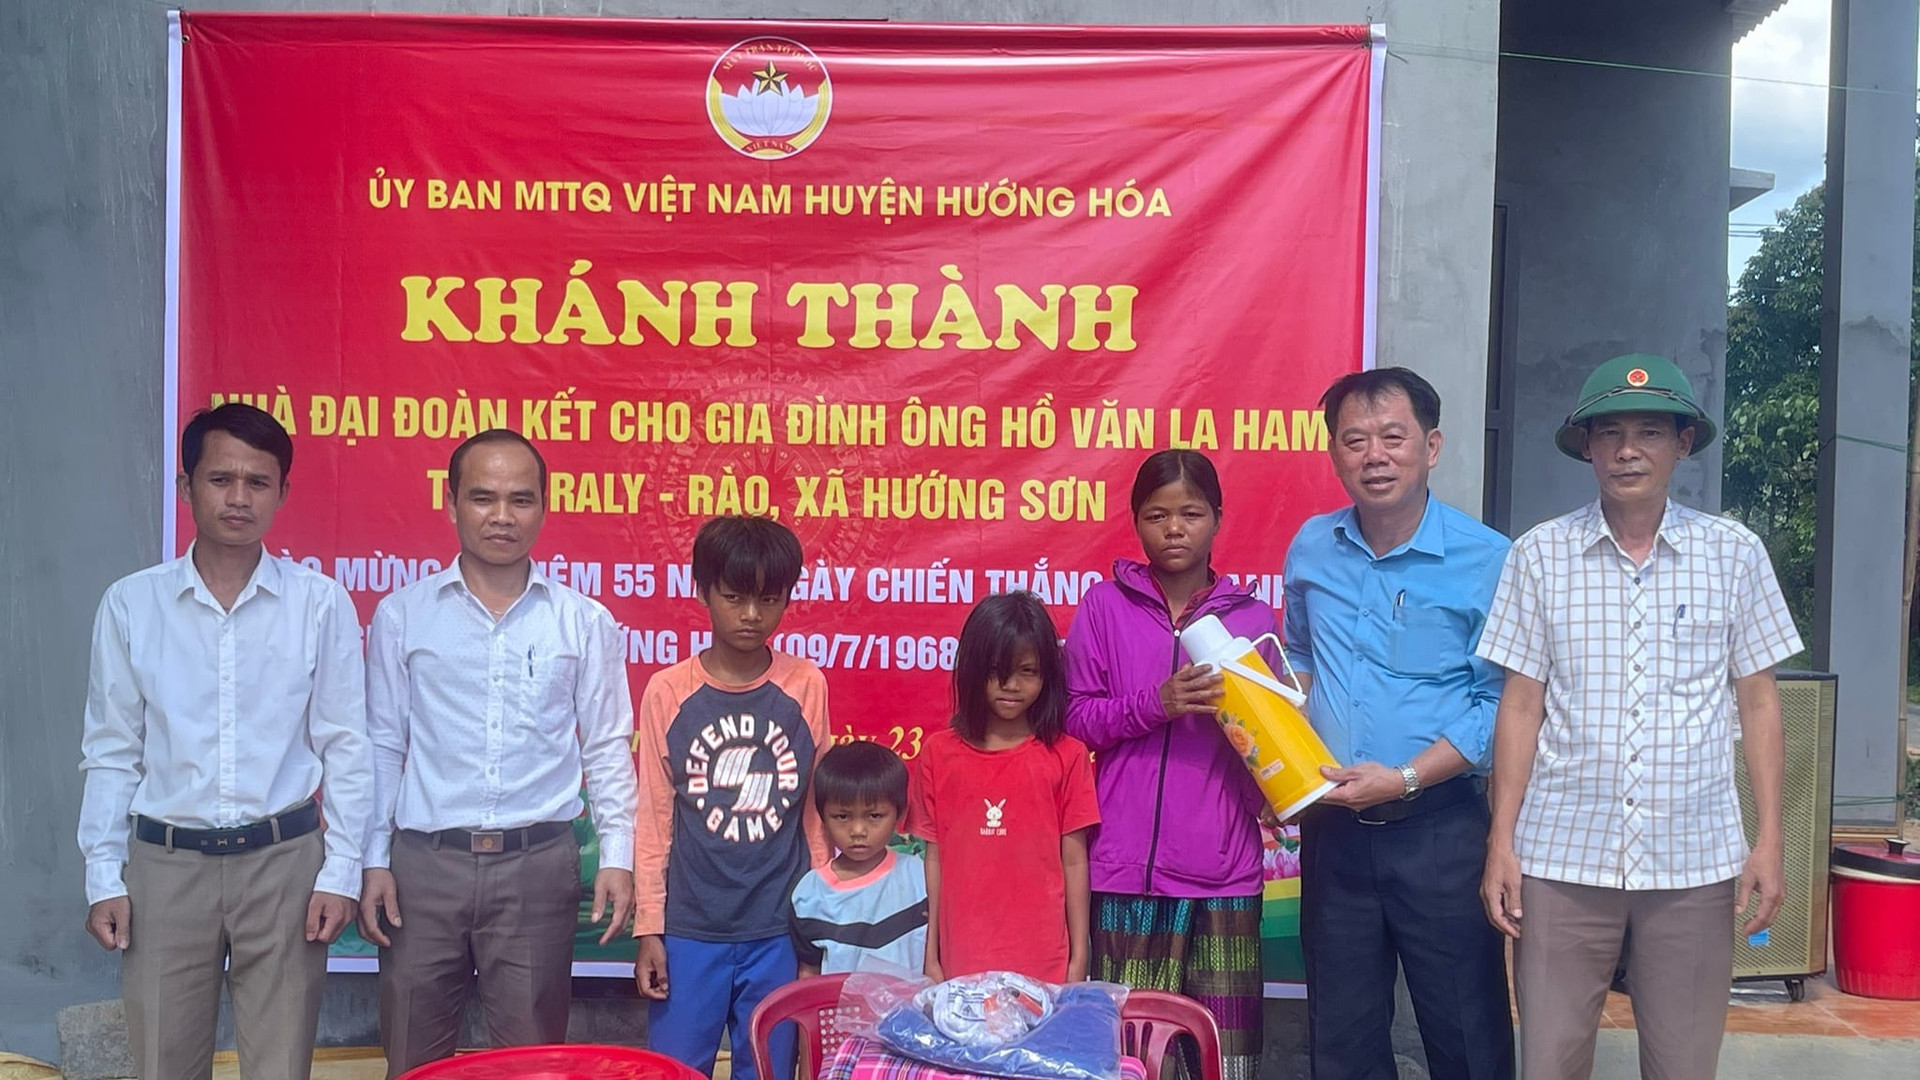 Ủy ban MTTQ Việt Nam huyện Hướng Hóa khánh thành, bàn giao nhà Đại đoàn kết cho hộ ông Hồ Văn La Ham.